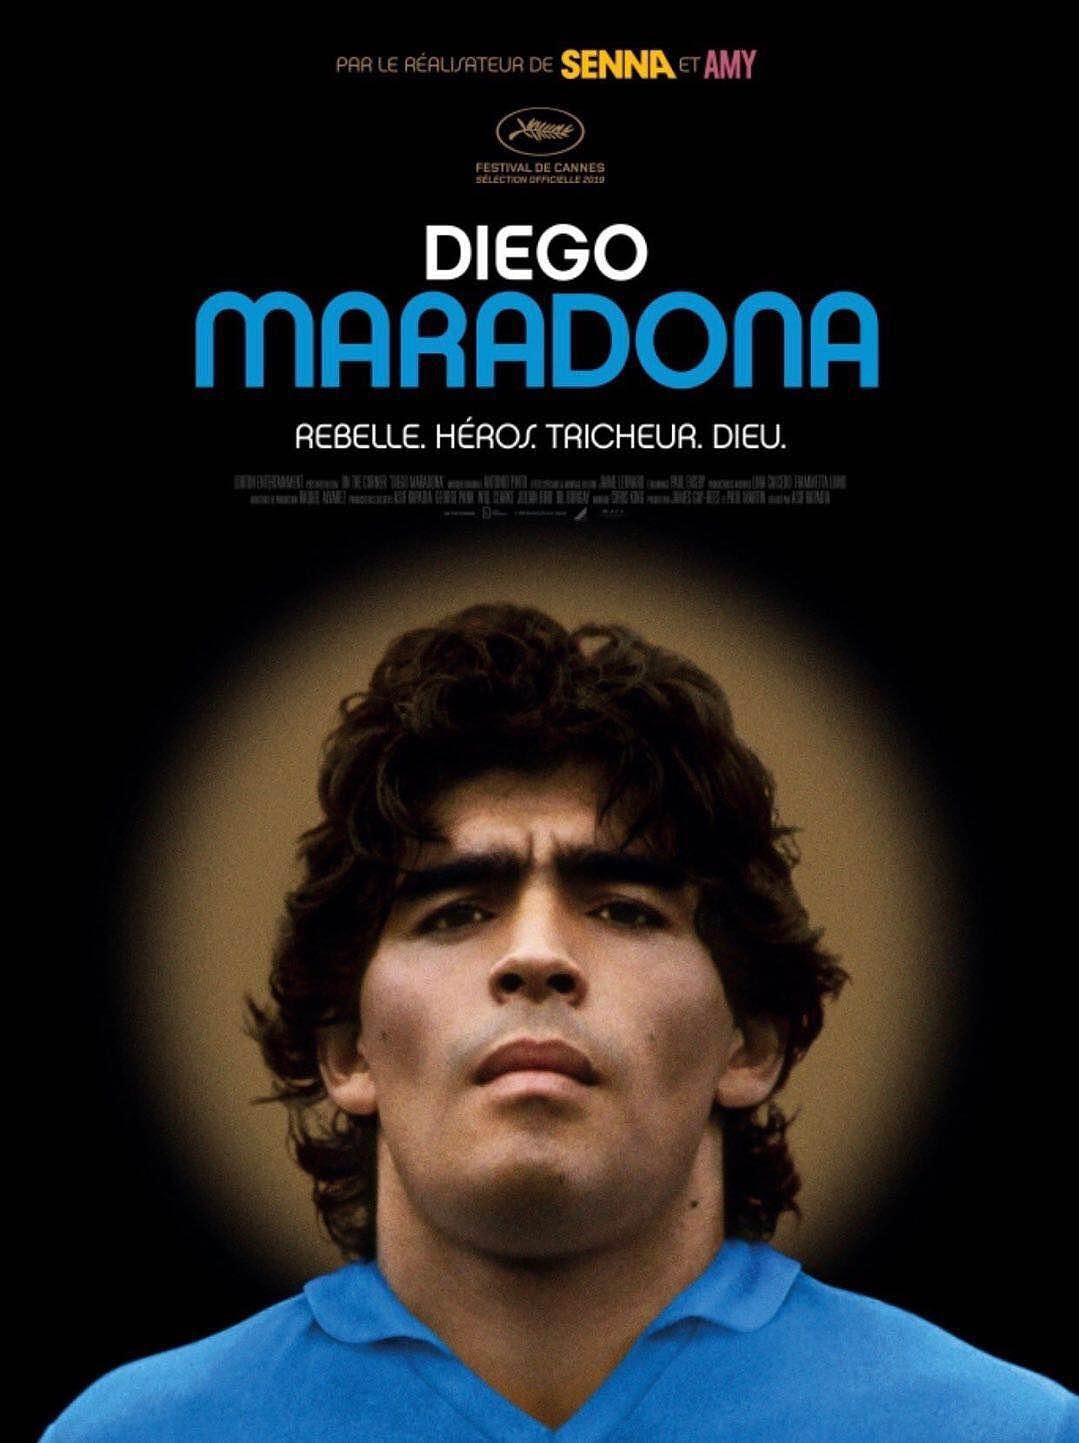 马拉多纳 Diego.Maradona.2019.SUBBED.1080p.BluRay.x264-CADAVER 8.74GB-1.png